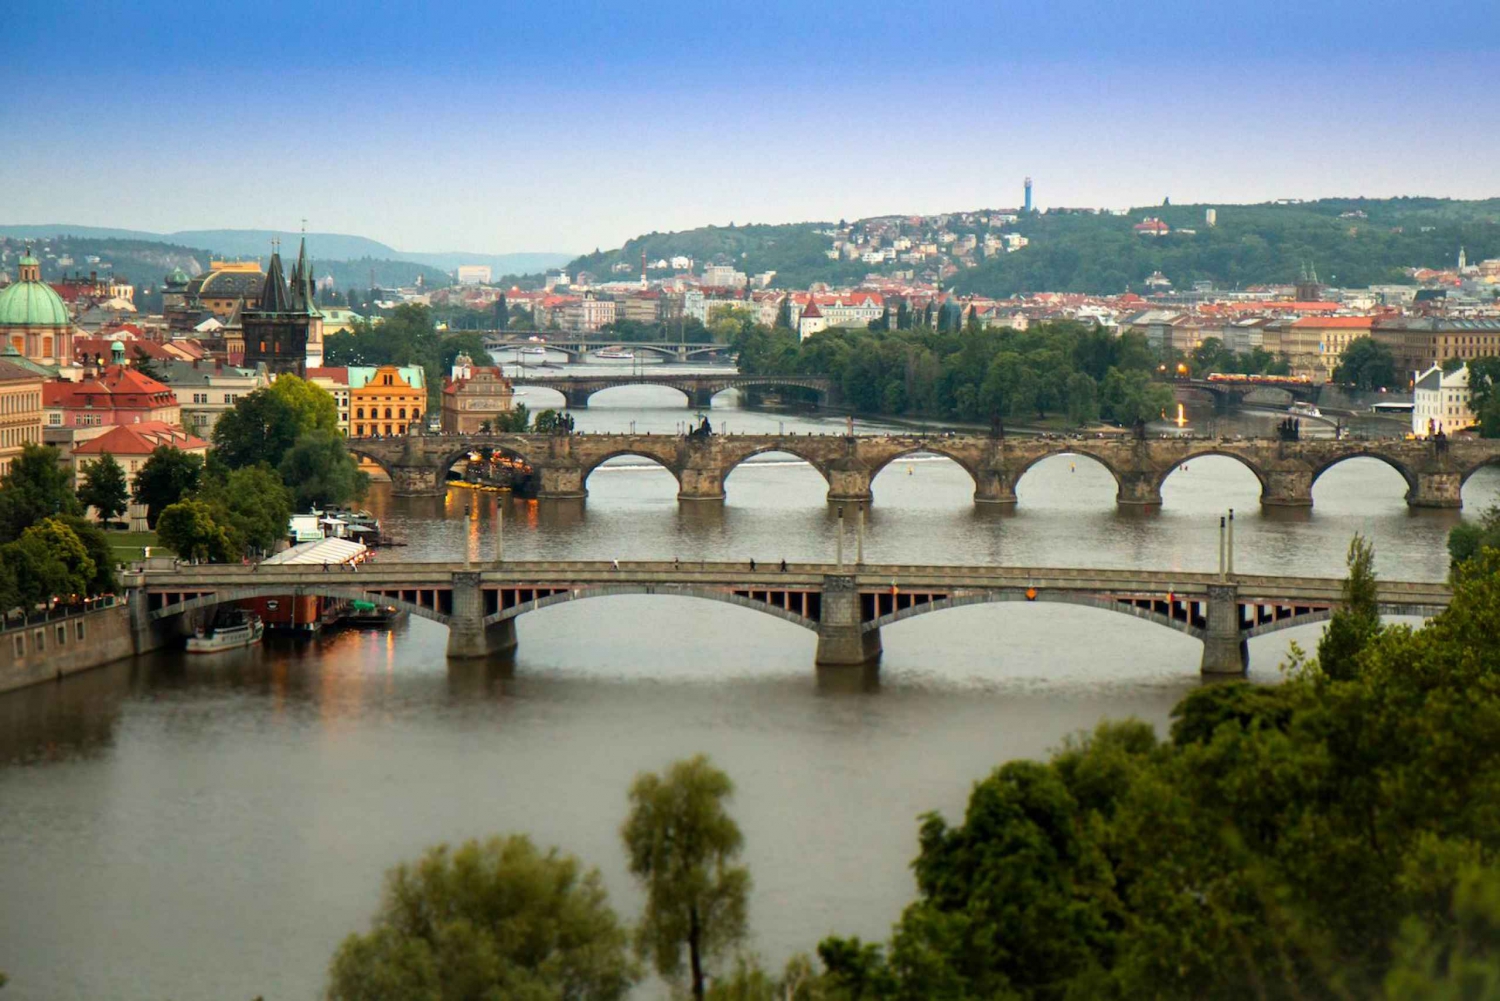 Prague: Stunning Viewpoints, Castle, City & Park Bike Tour